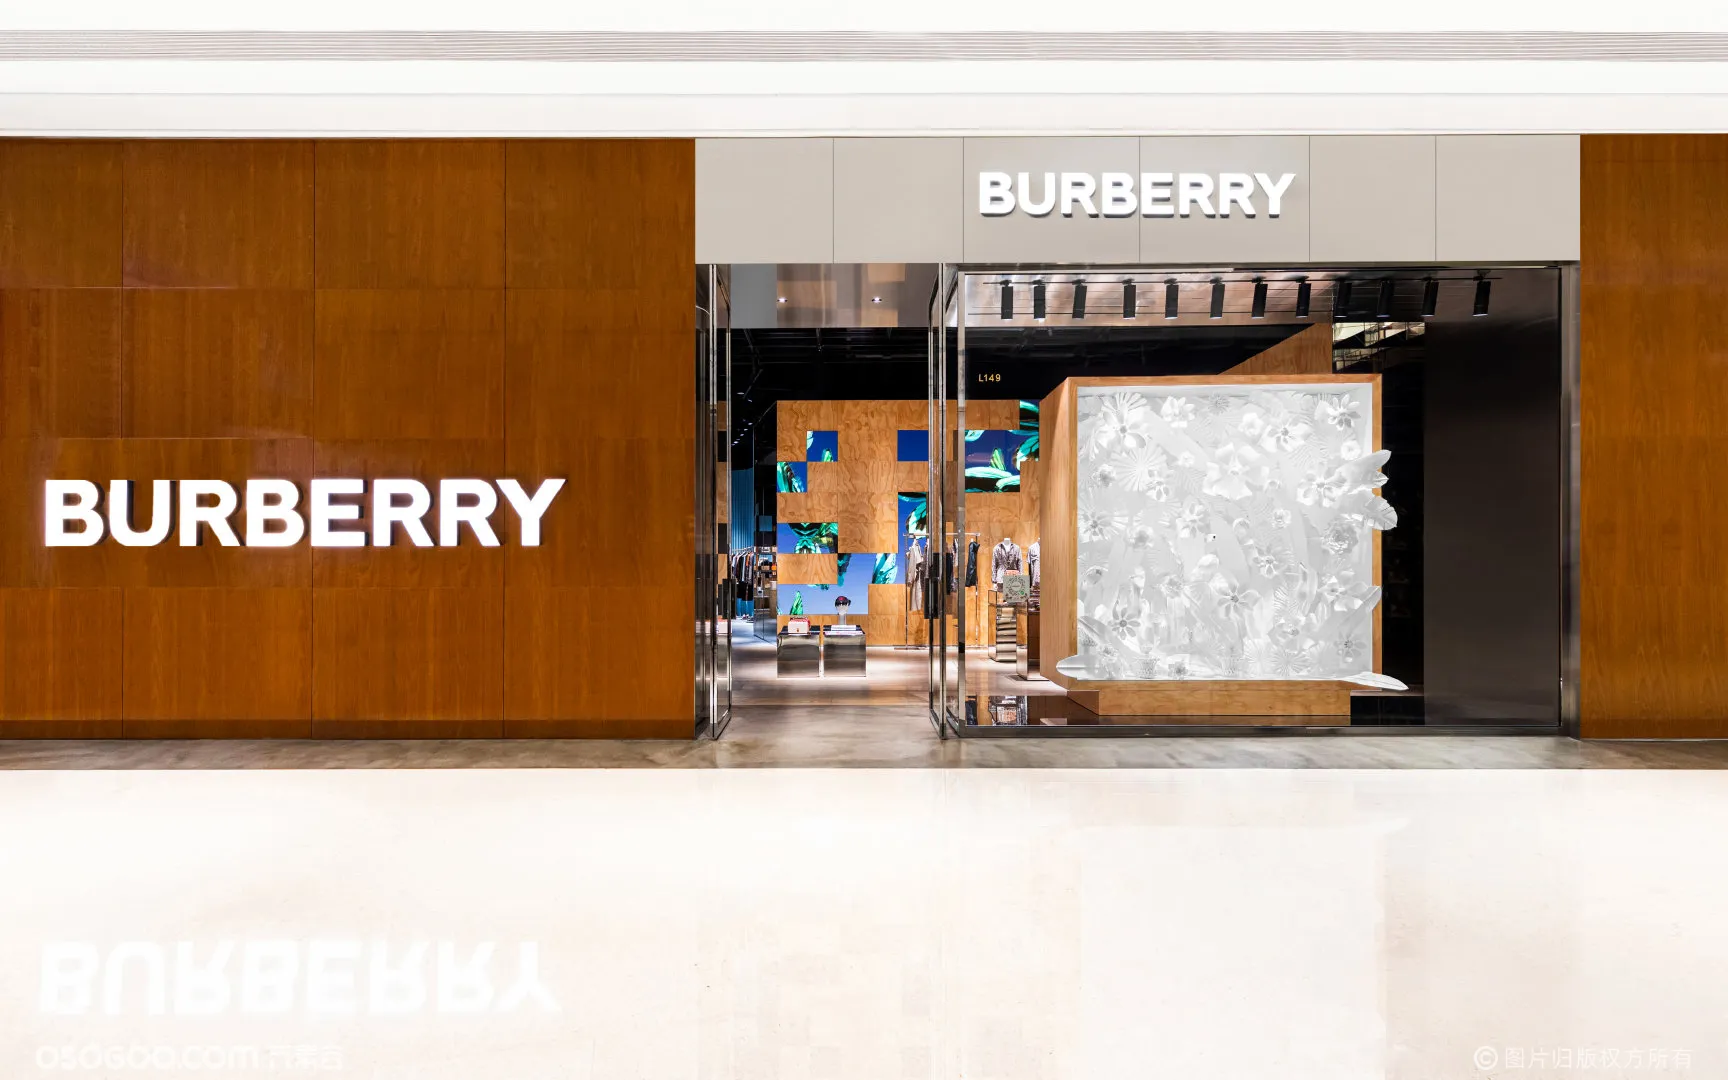 Burberry 社交零售精品店-互动橱窗装置